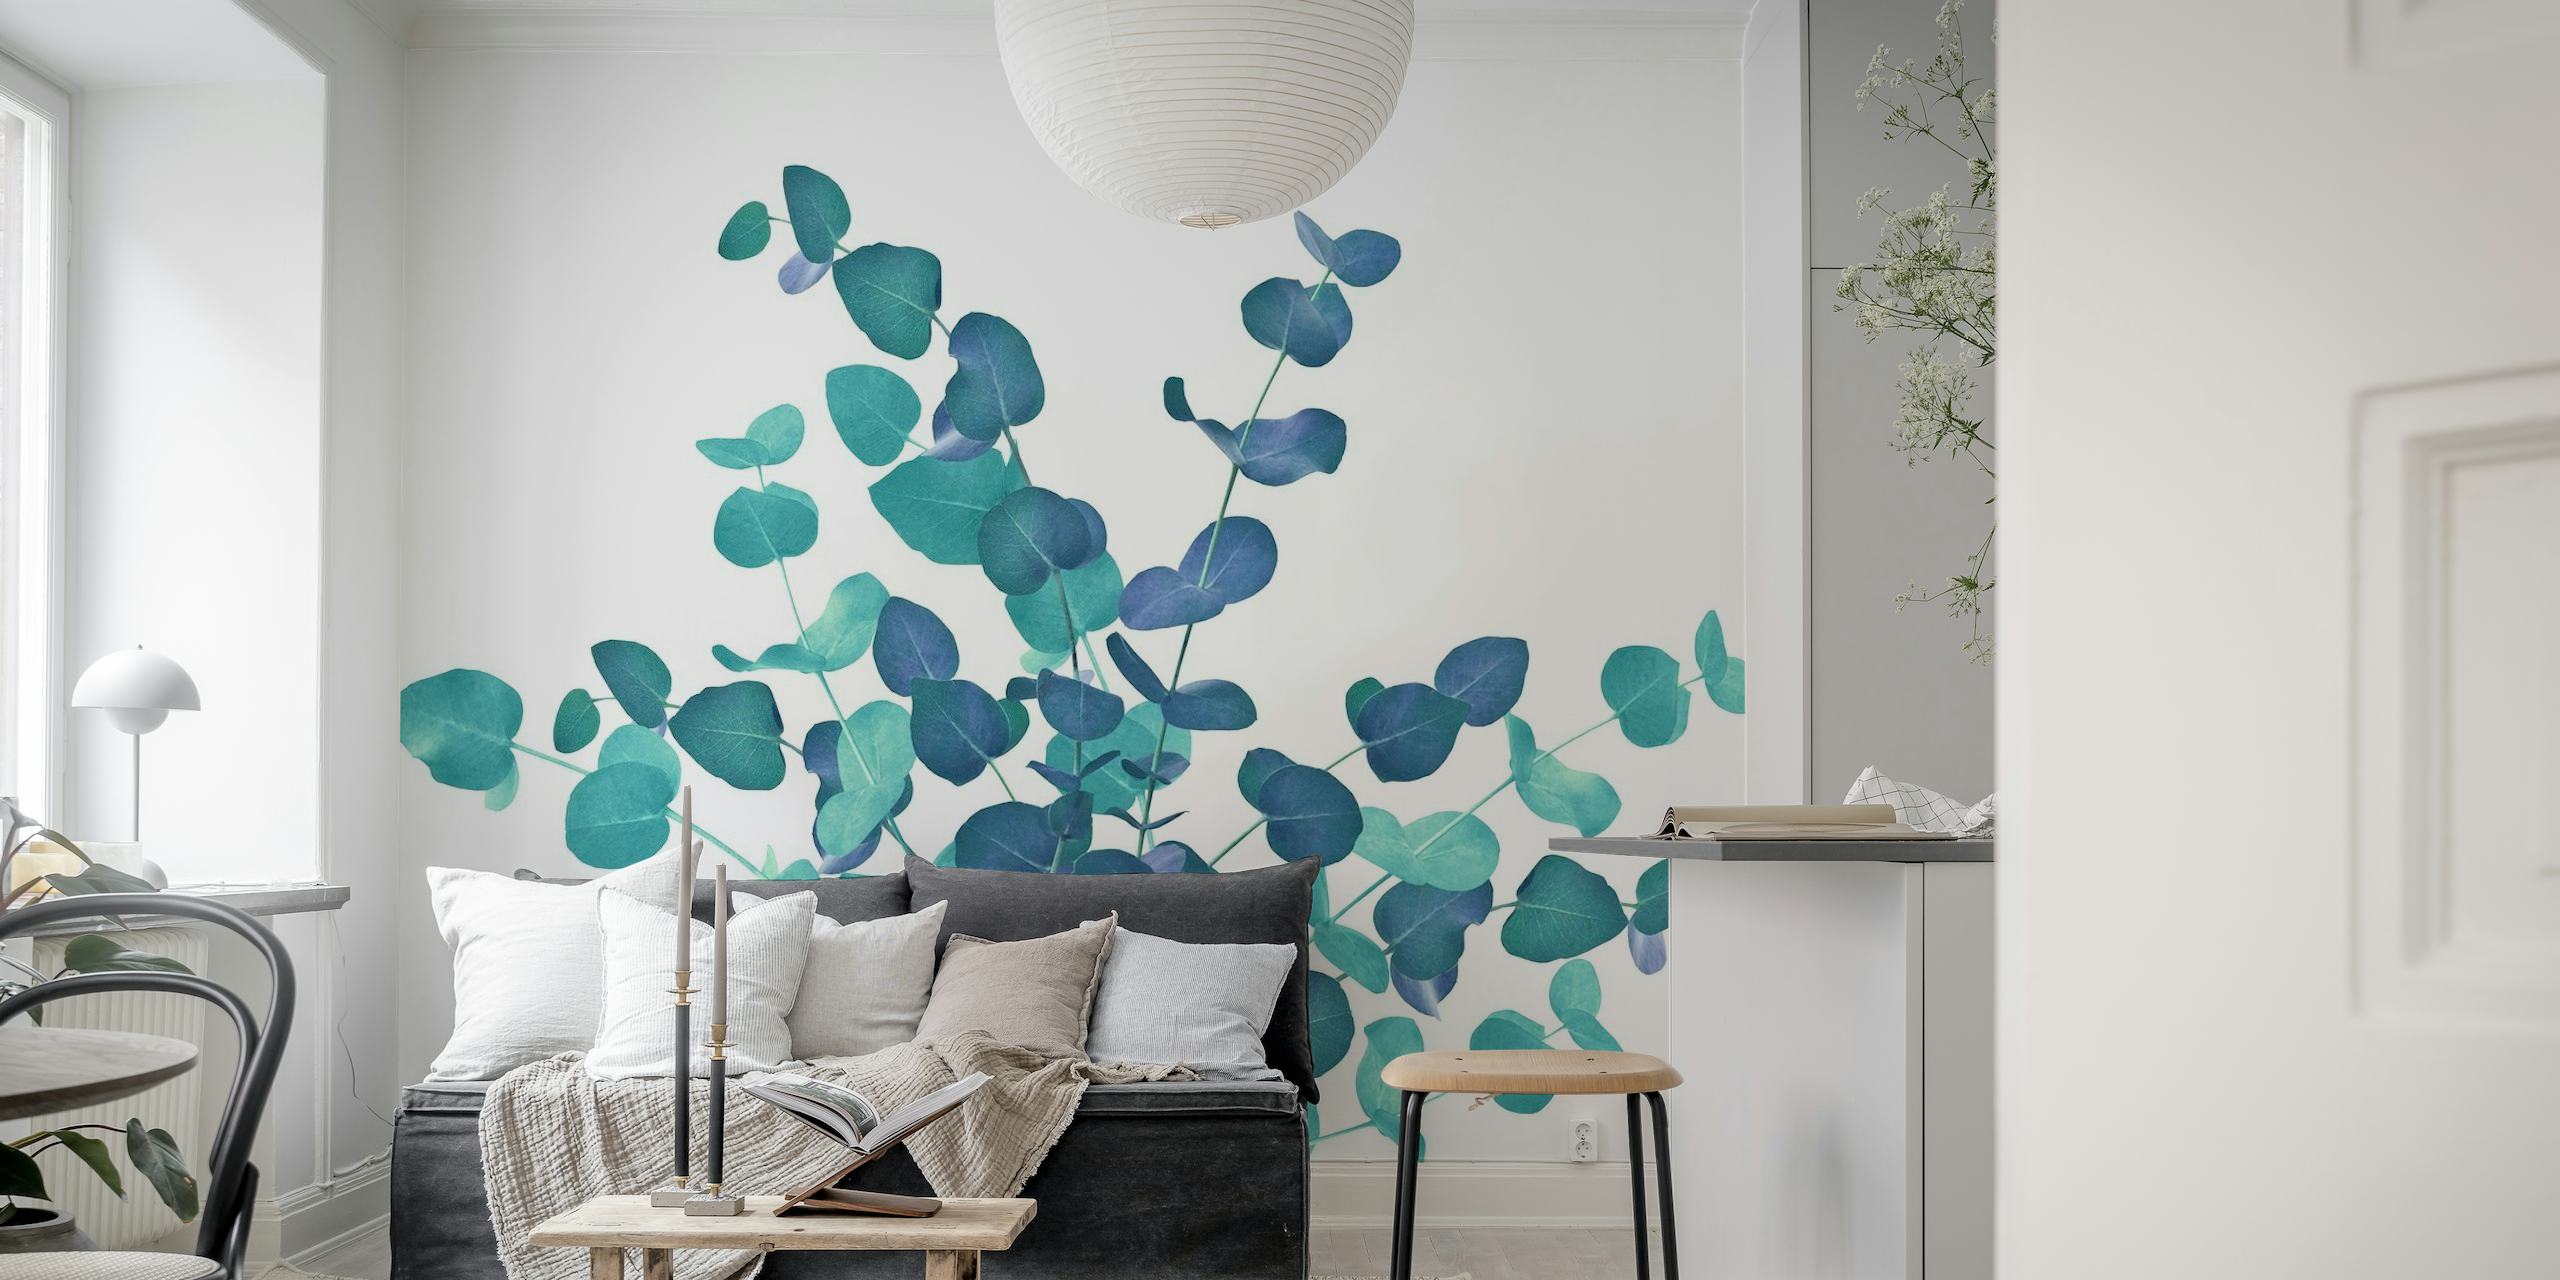 Zidna slika s listovima eukaliptusa u plavim nijansama, stvarajući spokojan botanički prikaz